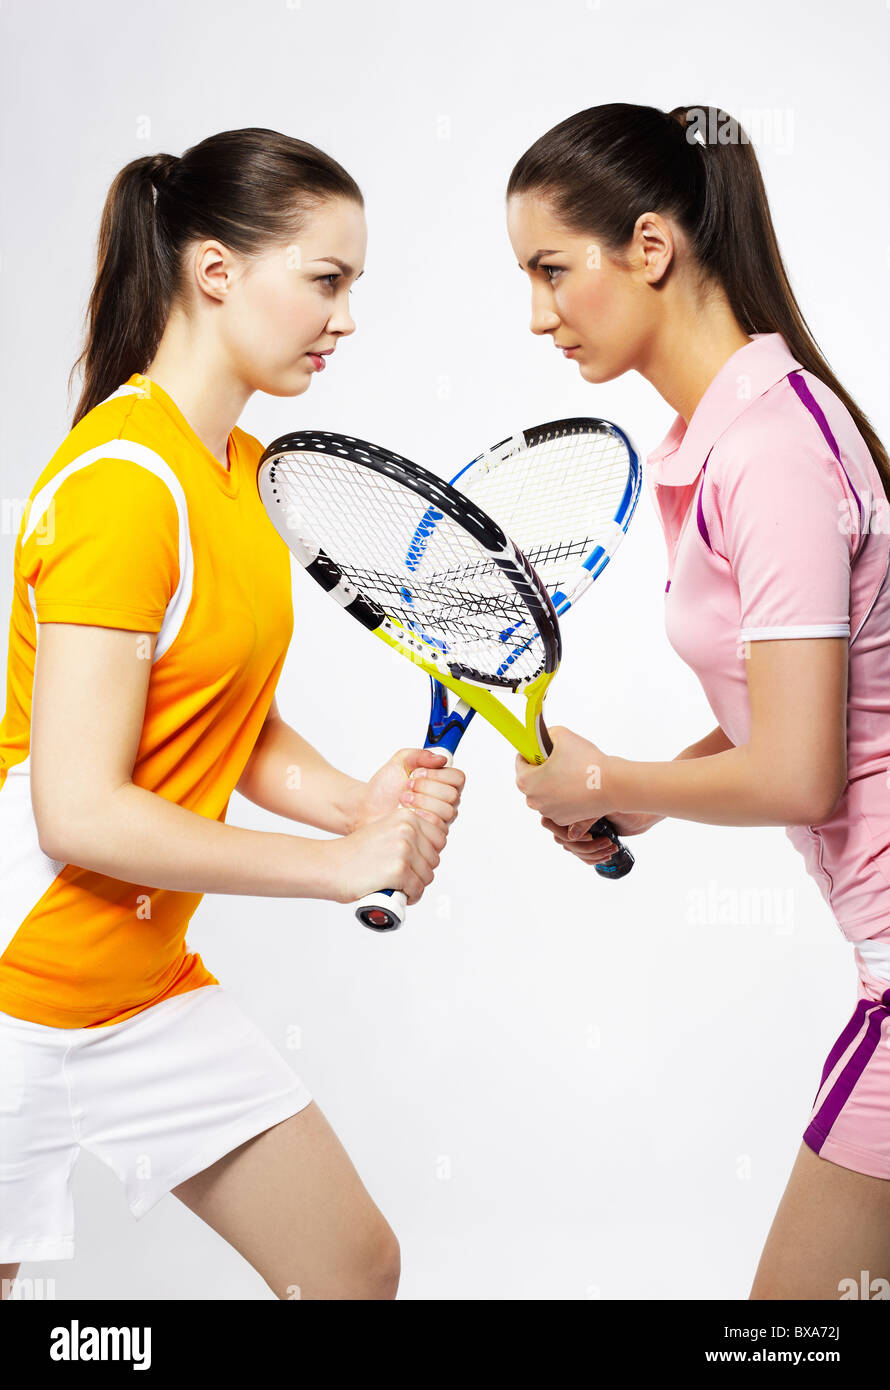 Ritratto di due ragazze sportivo i giocatori di tennis con racchette Foto Stock